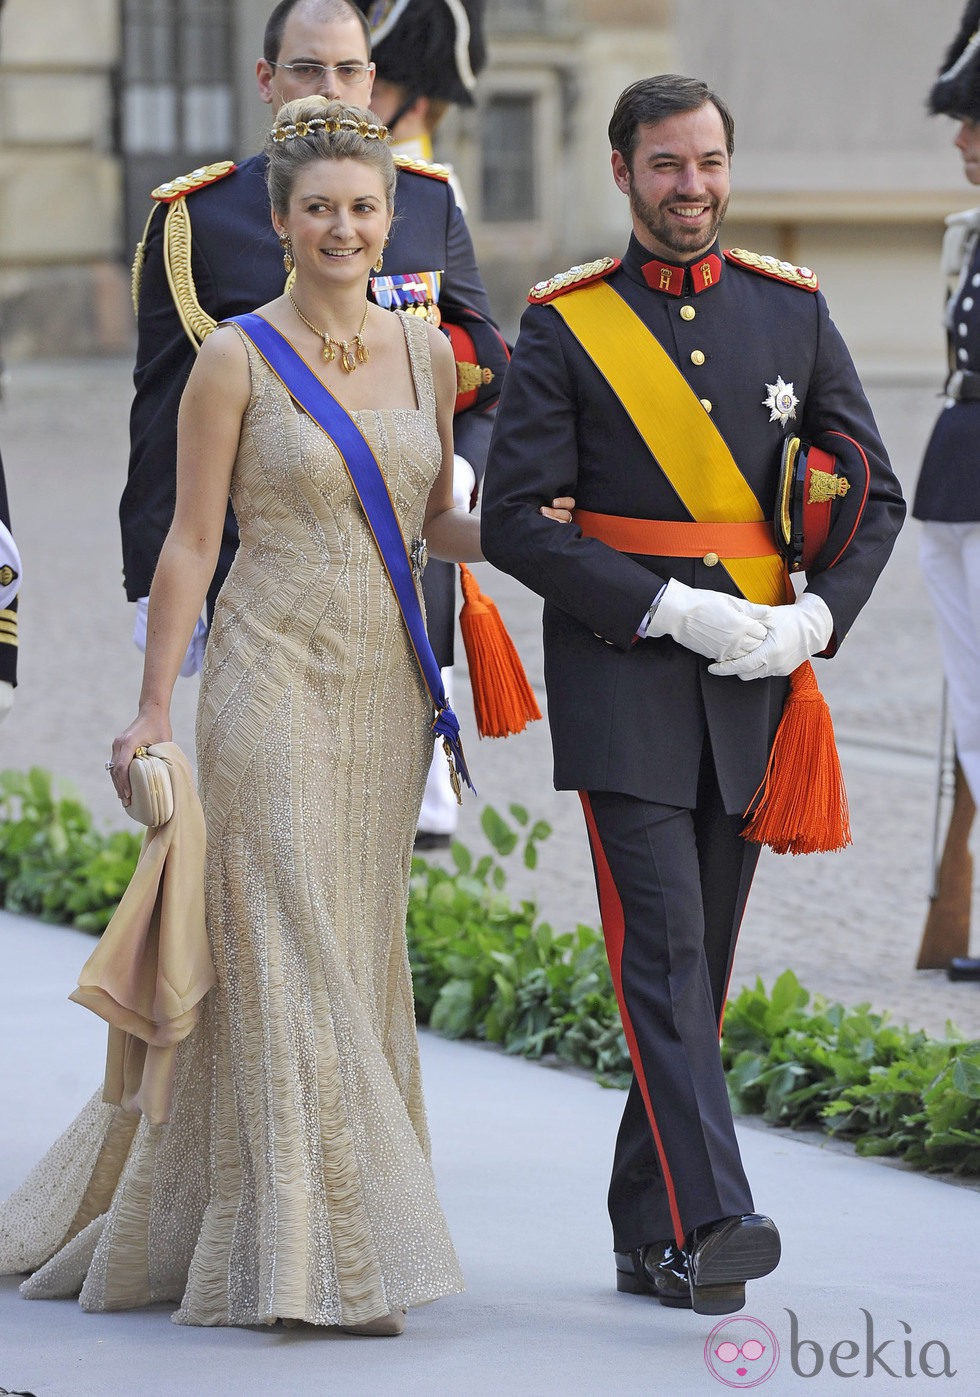 Stéphanie de Luxemburgo con un vestido champagne en la boda de Magdalena de Suecia y Chris O'Neill